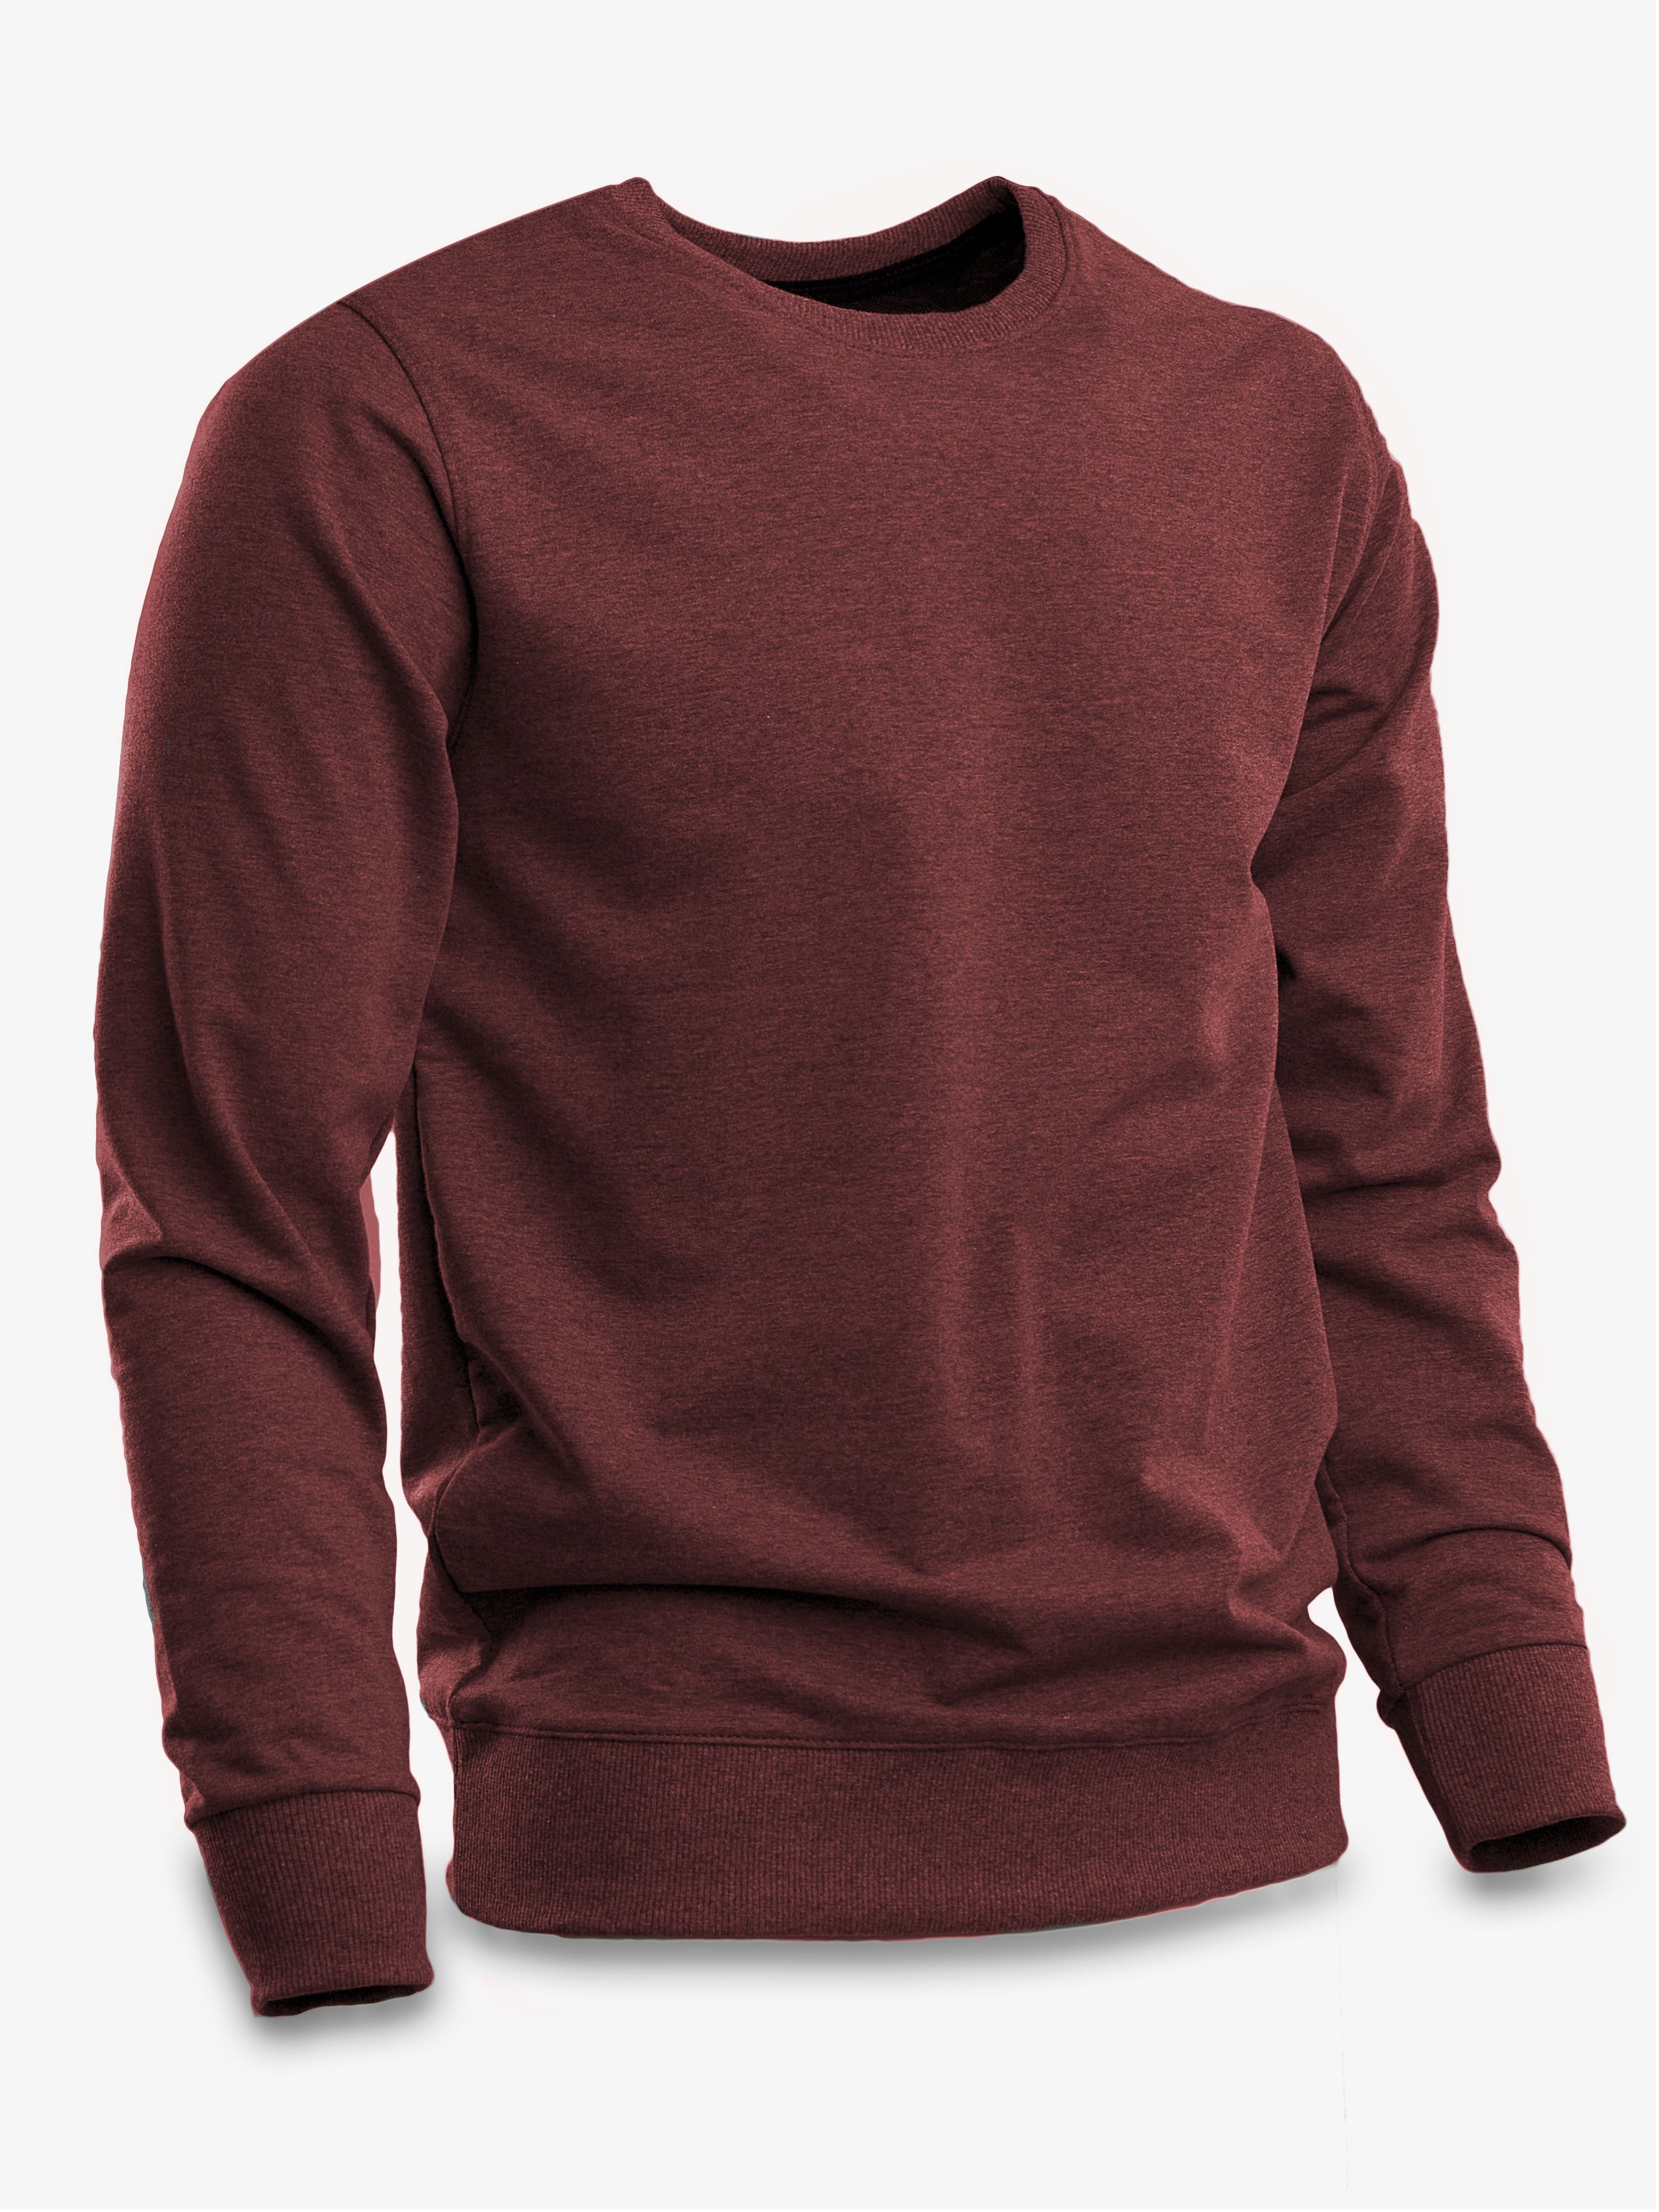 свитер бордовый мужской